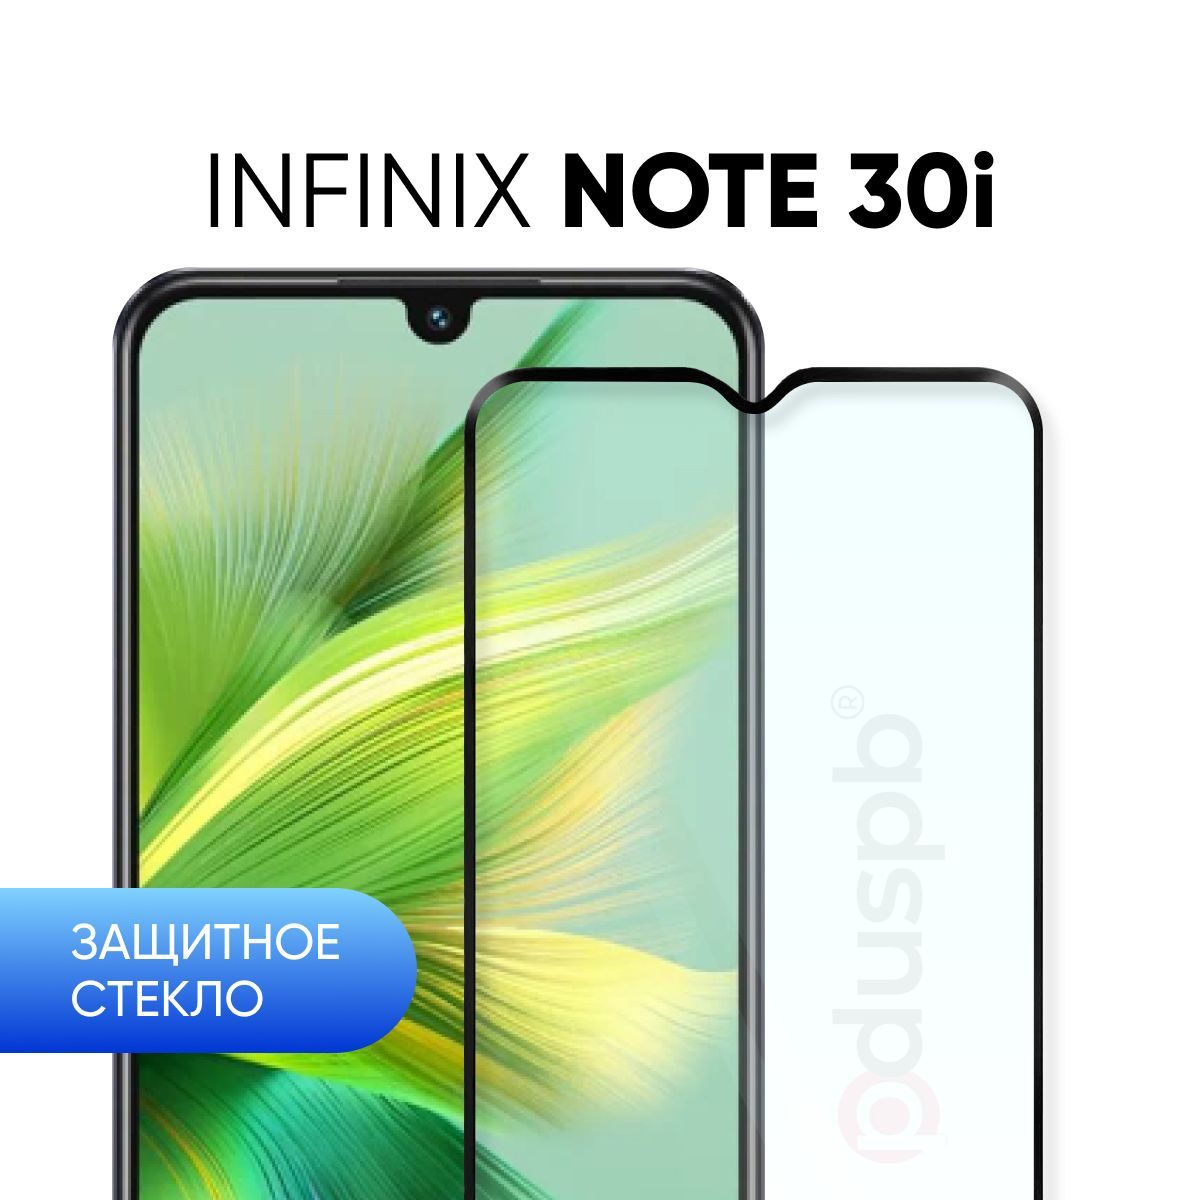 Note 12 pro защитное стекло. Инфиникс Note 30i. Инфиникс ноут 30 i. Смартфон Infinix Note 30i. Infinix Note 30 характеристики.